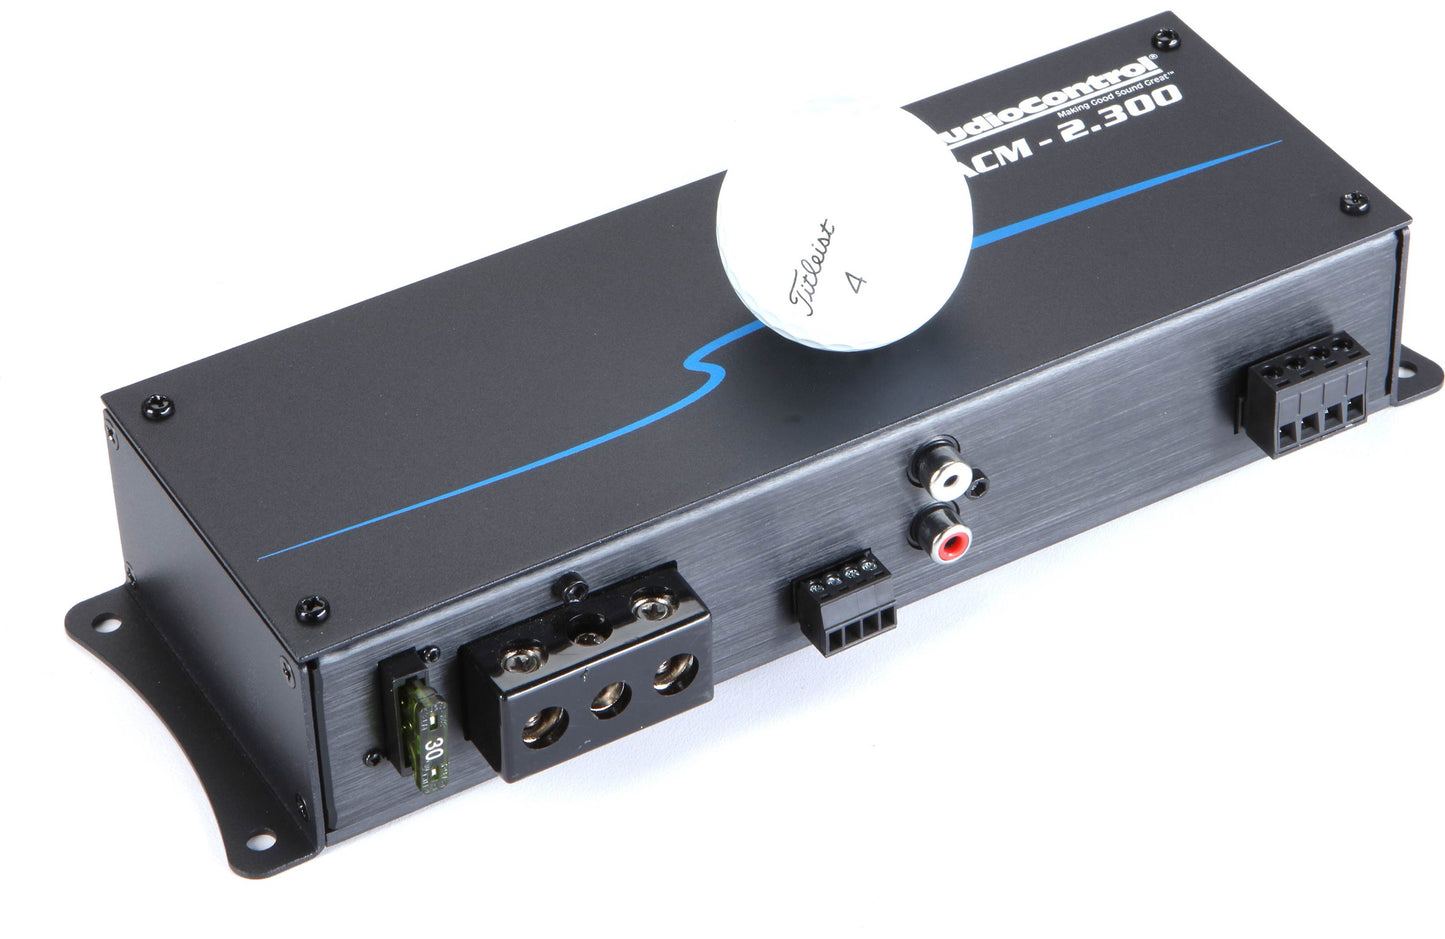 AudioControl ACM-2.300 ACM Series compact 2-channel car amplifier — 75 watts RMS x 2